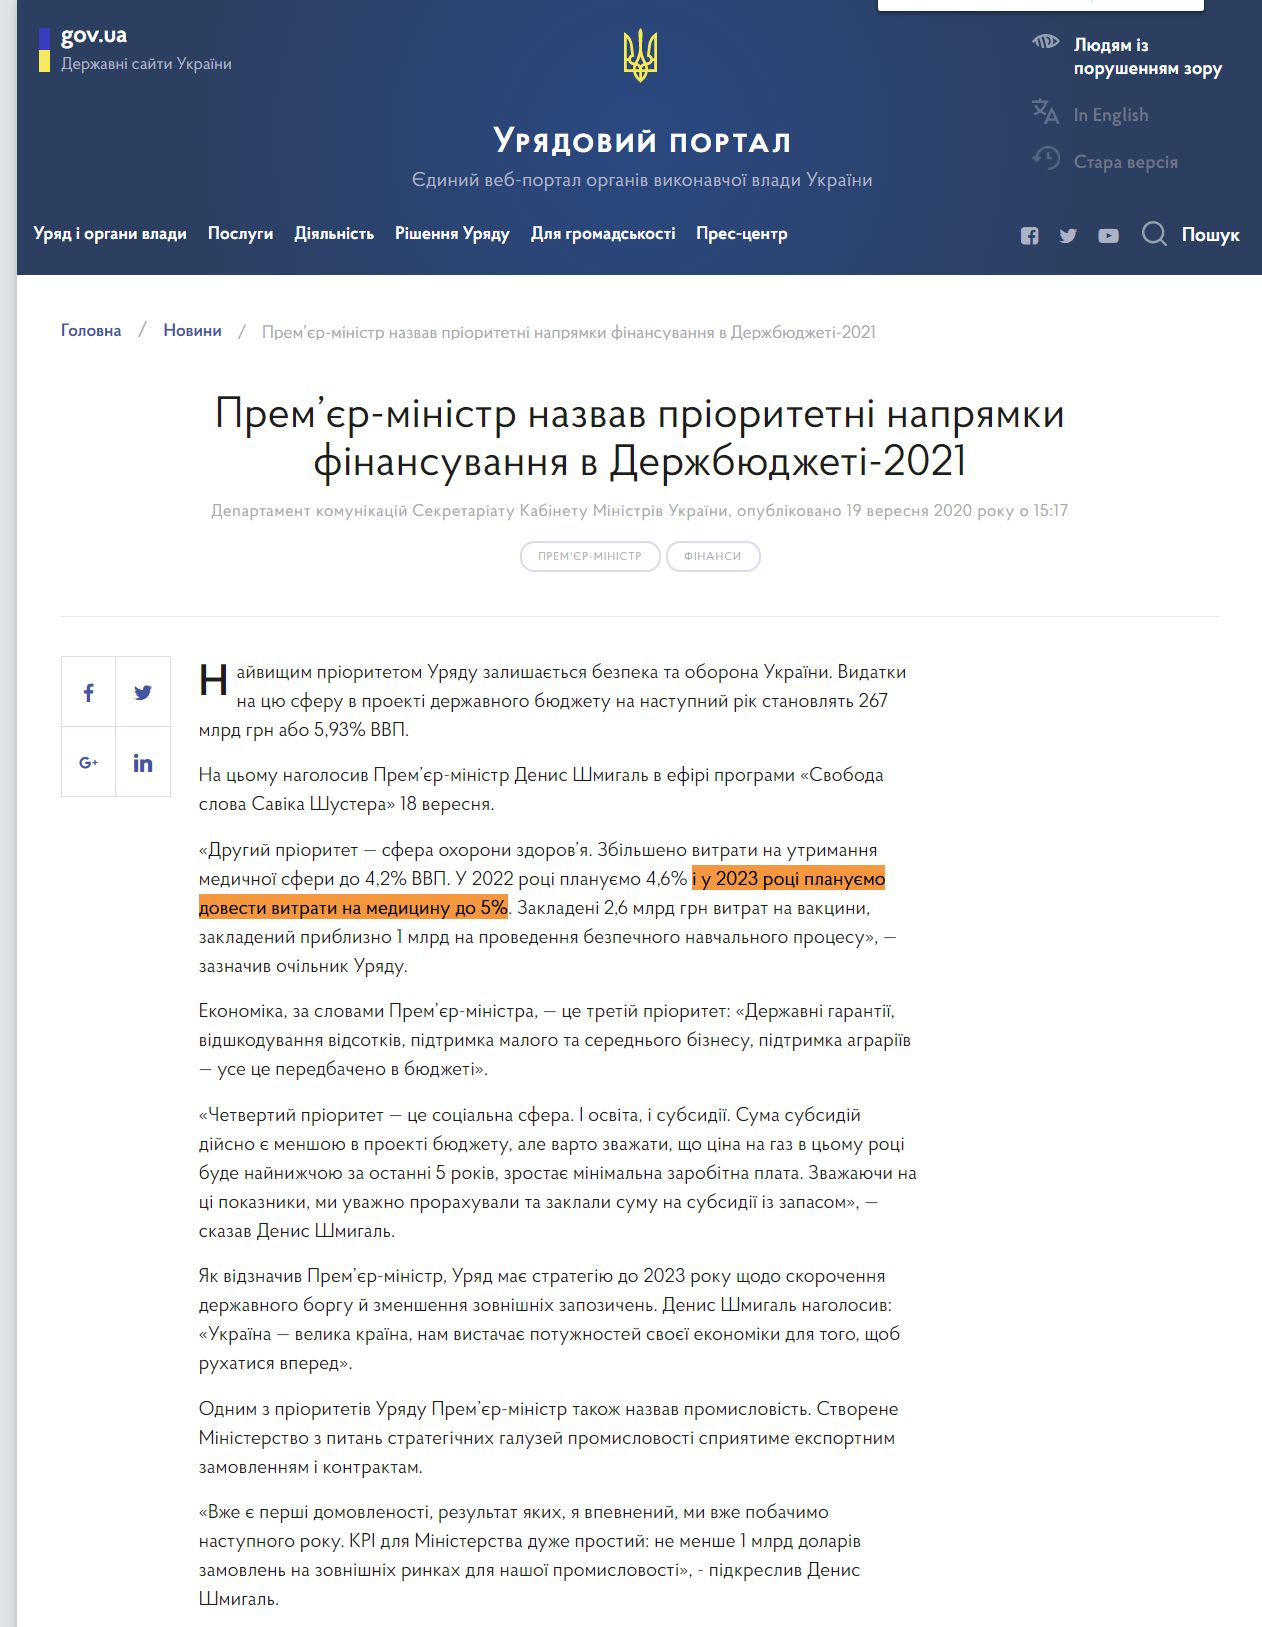 https://www.kmu.gov.ua/news/premyer-ministr-nazvav-prioritetni-napryamki-finansuvannya-v-derzhbyudzheti-2021